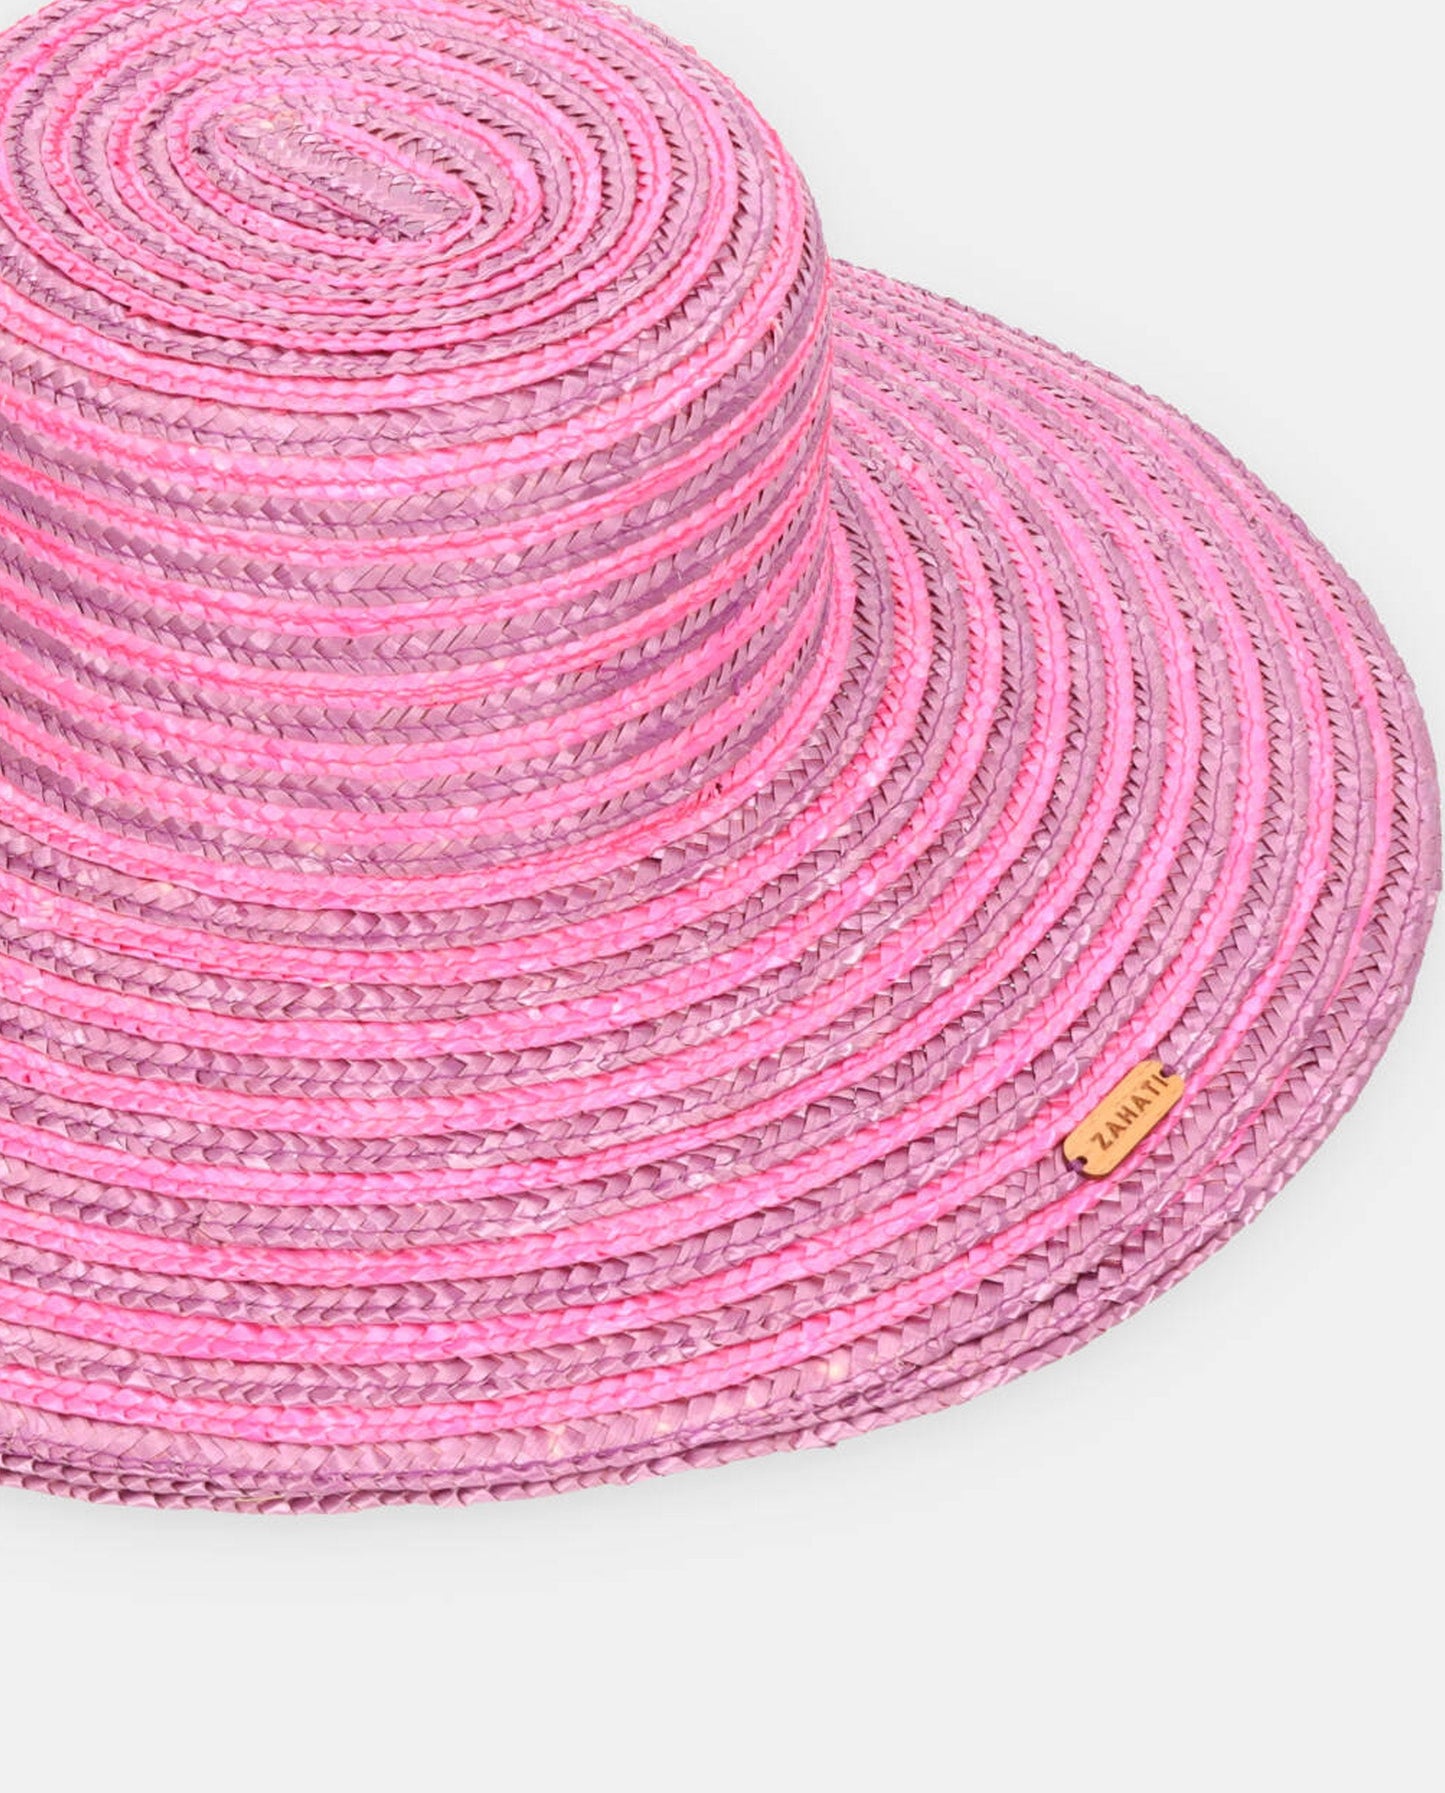 Purple spiral Cuchi hat with L brim